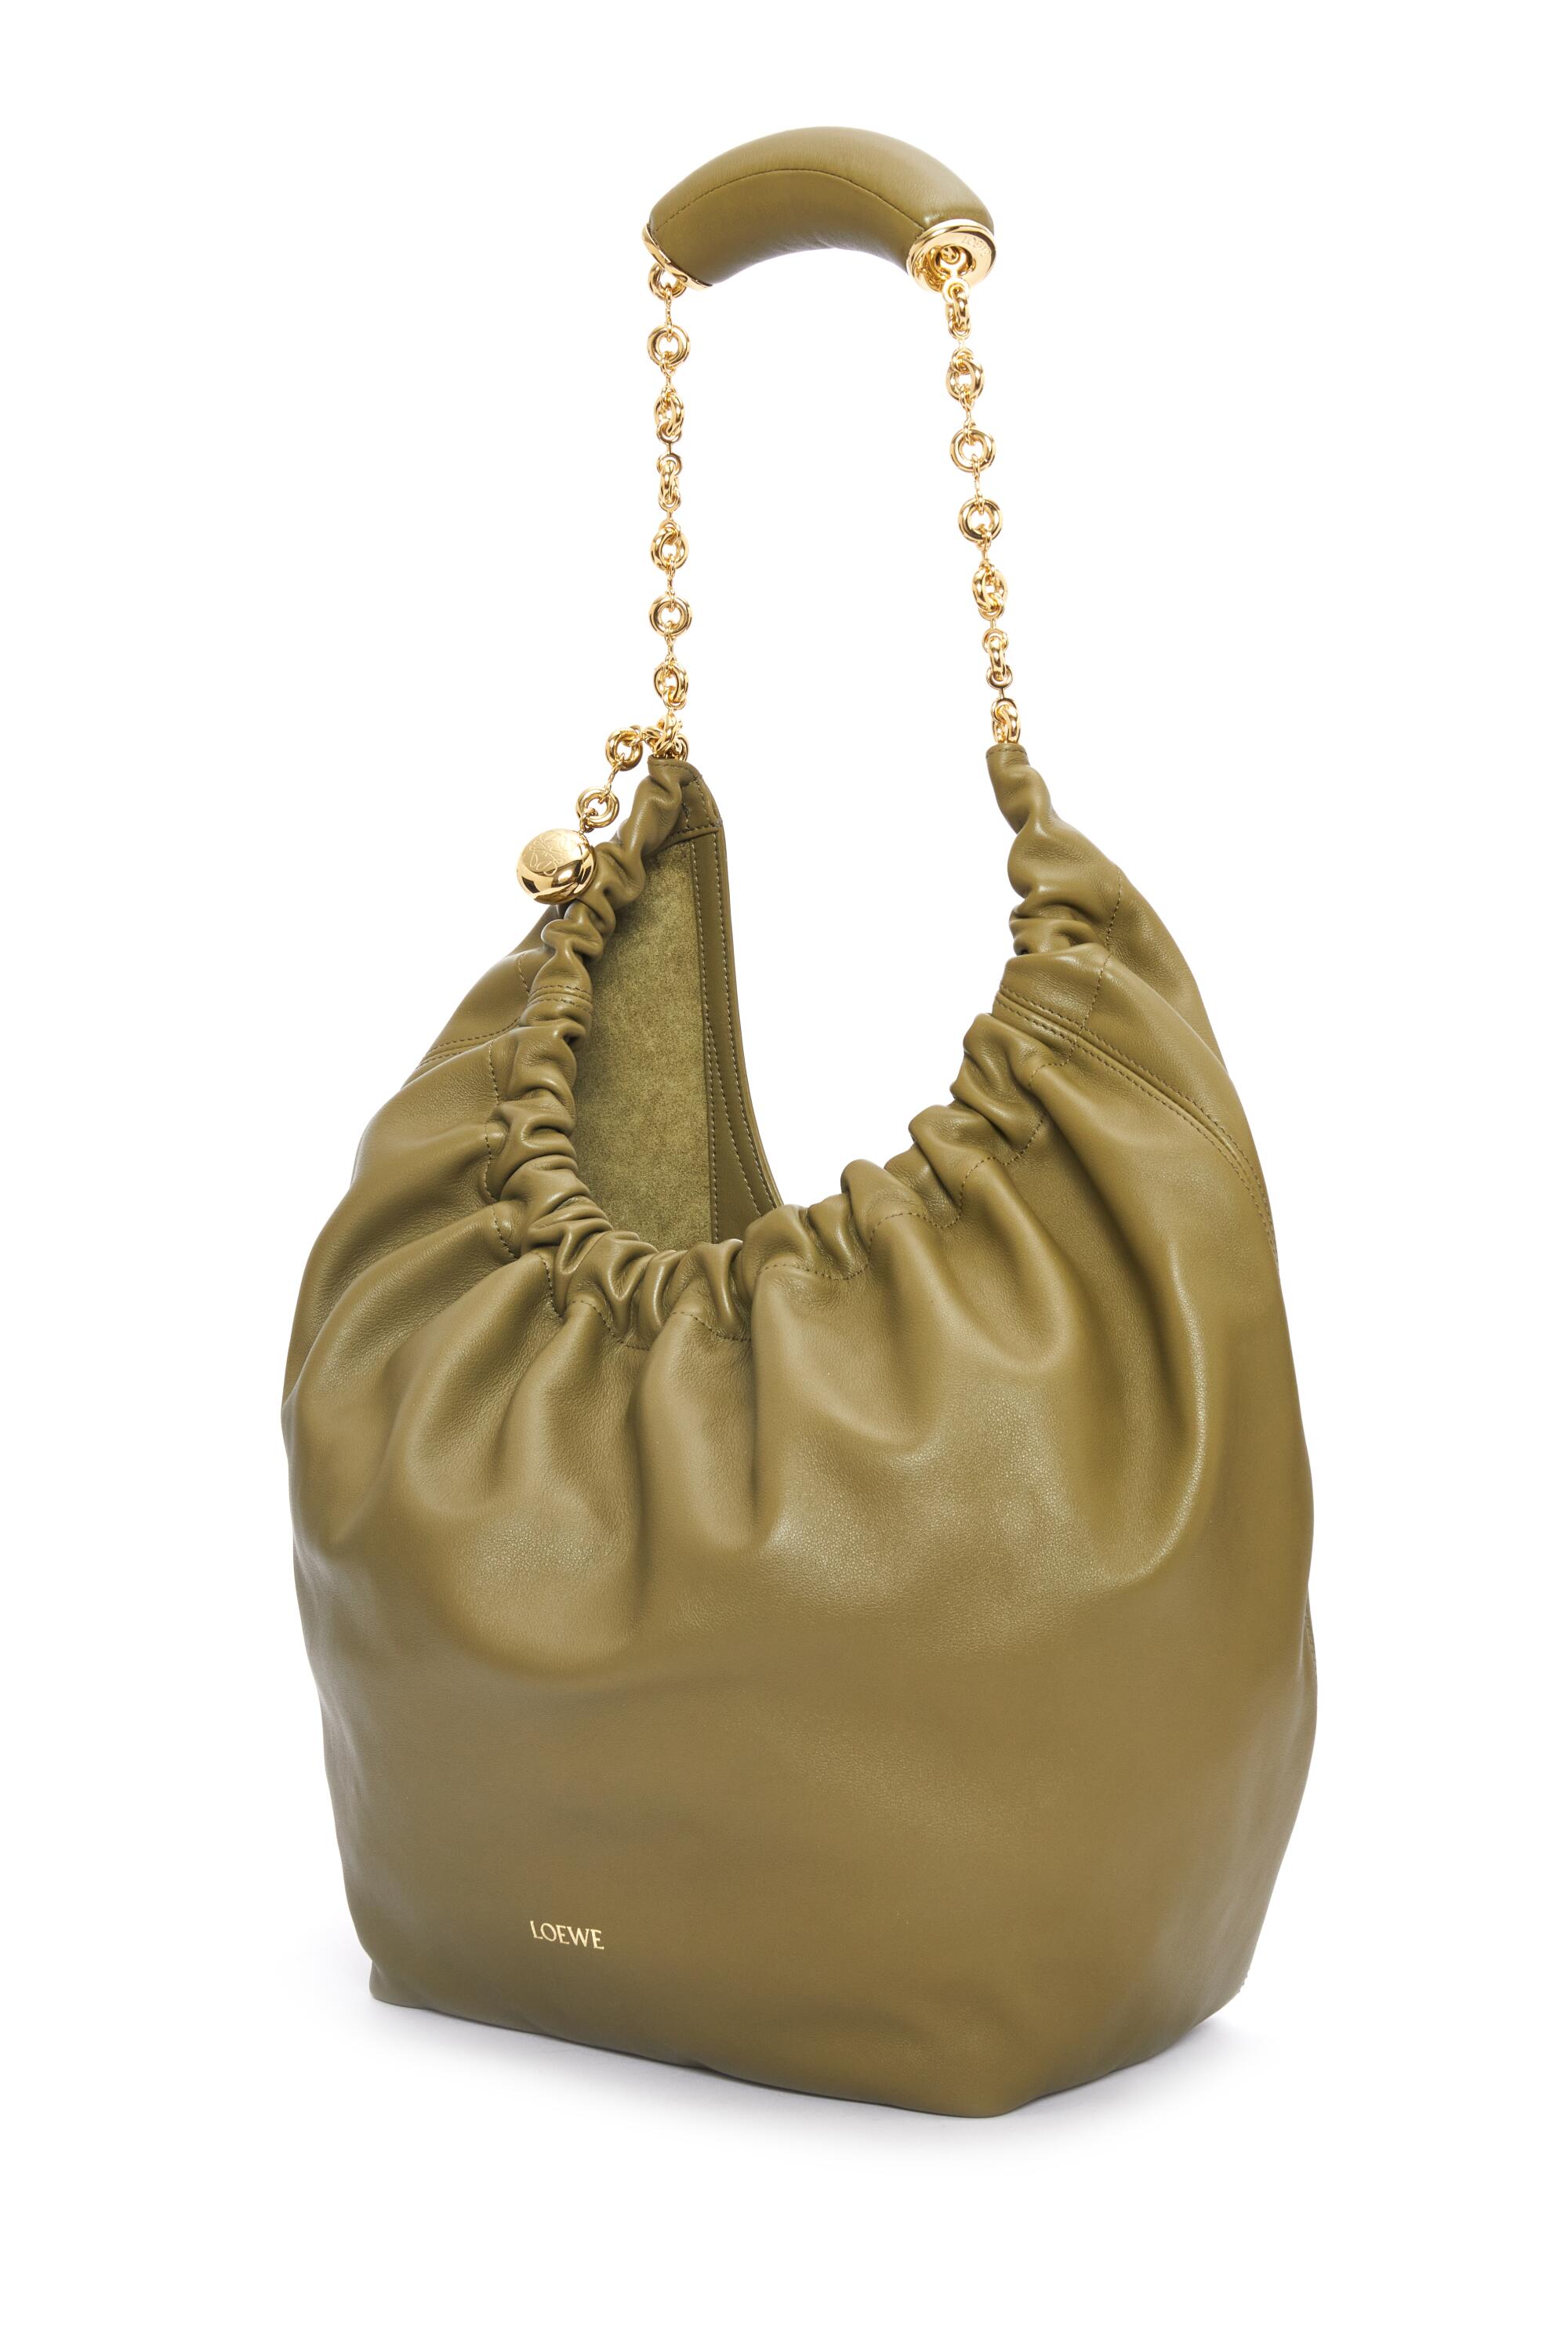 Loewe Squeeze Bag, 3 950 $ pour un petit, 4 550 $ pour un moyen. Loewe fait juste bien la ruche.  Offert en quatre couleurs sophistiquées